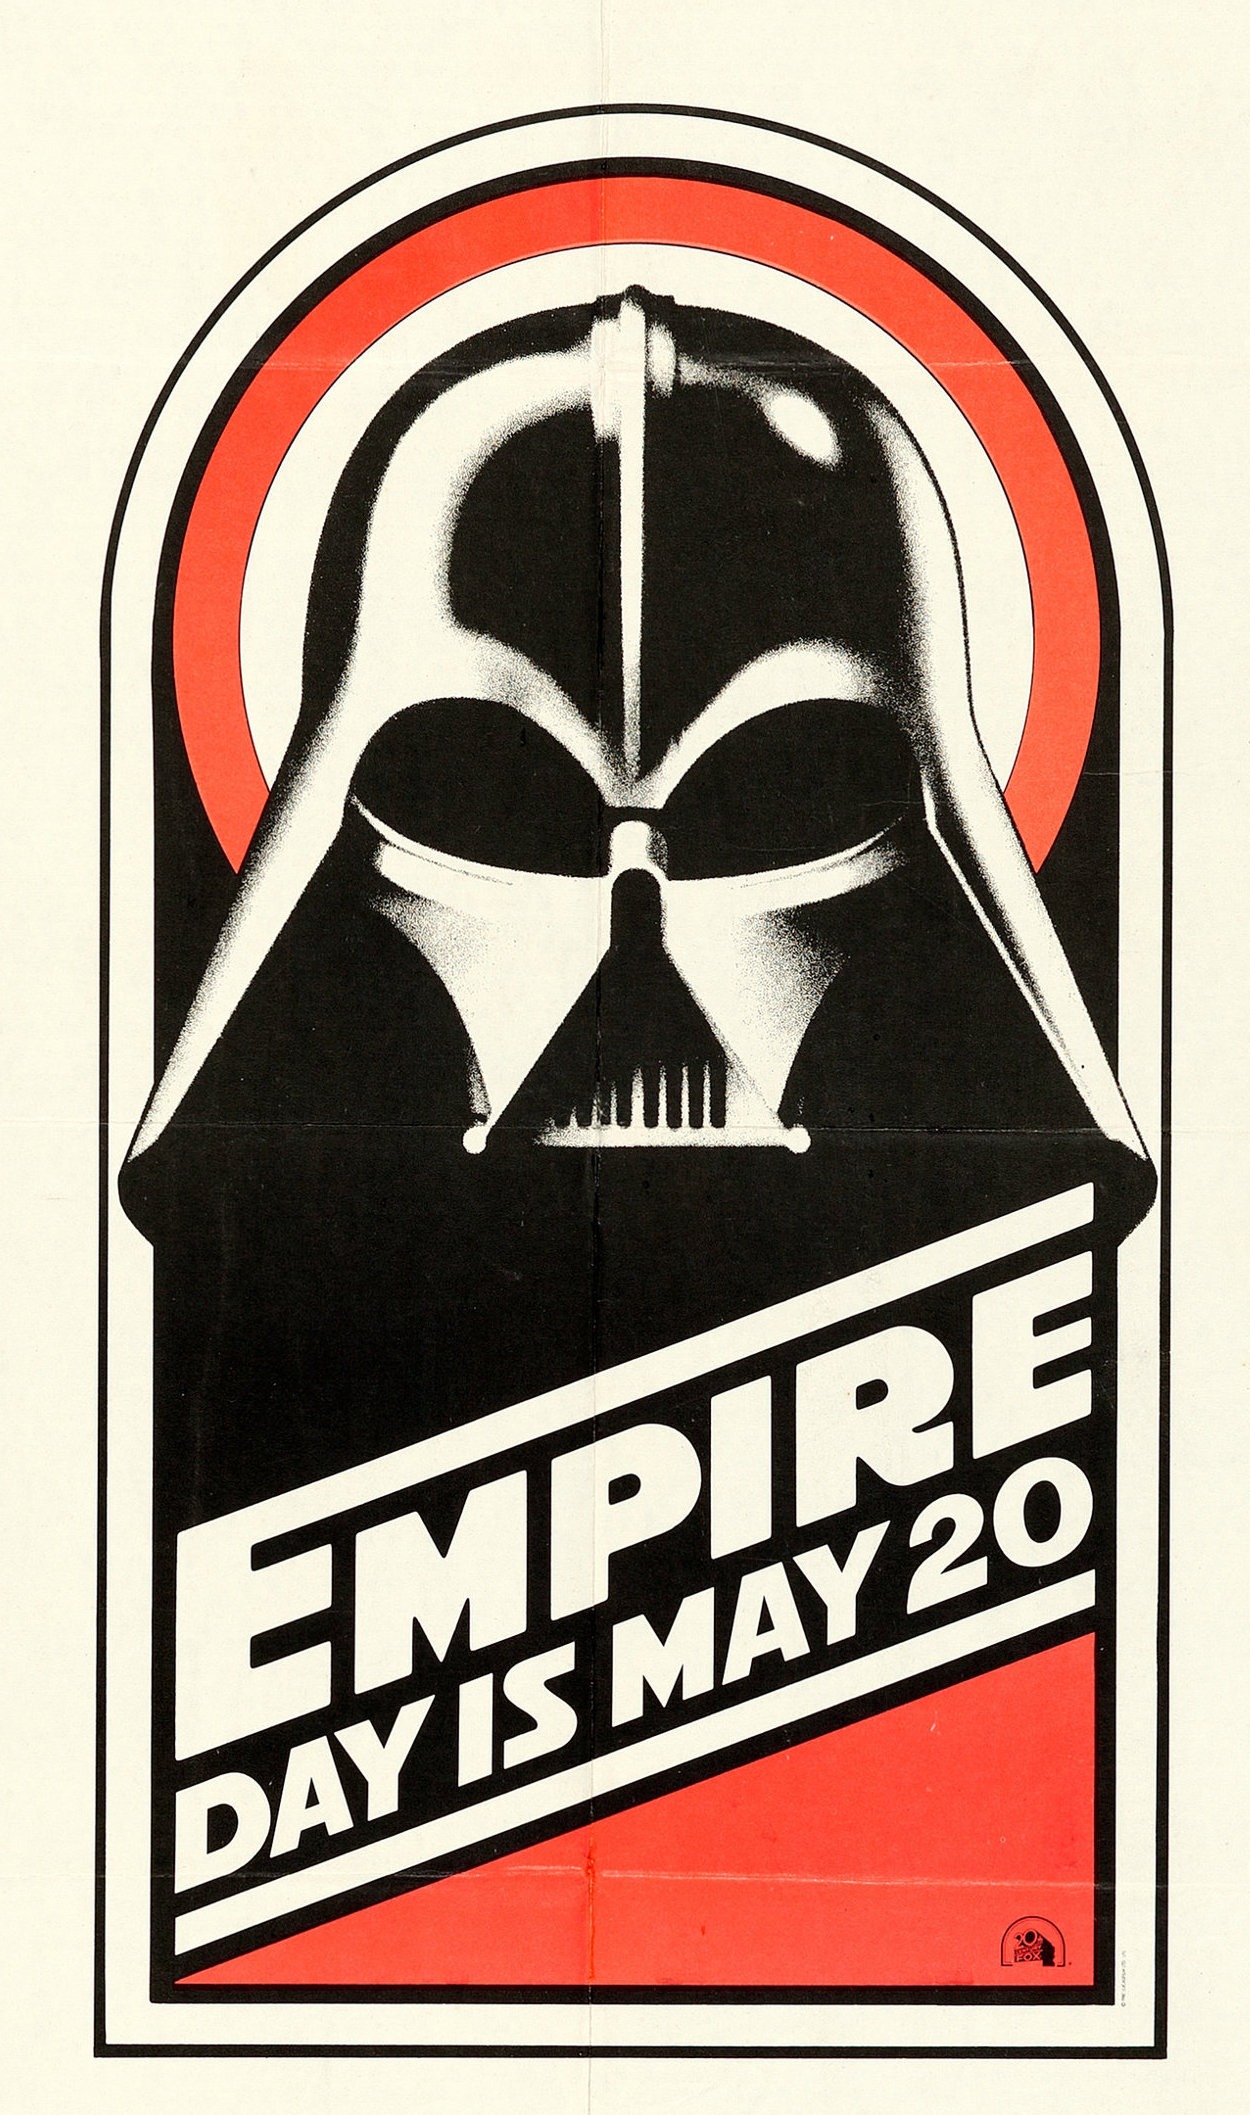 The Empire Strikes Back (1980) teaser poster